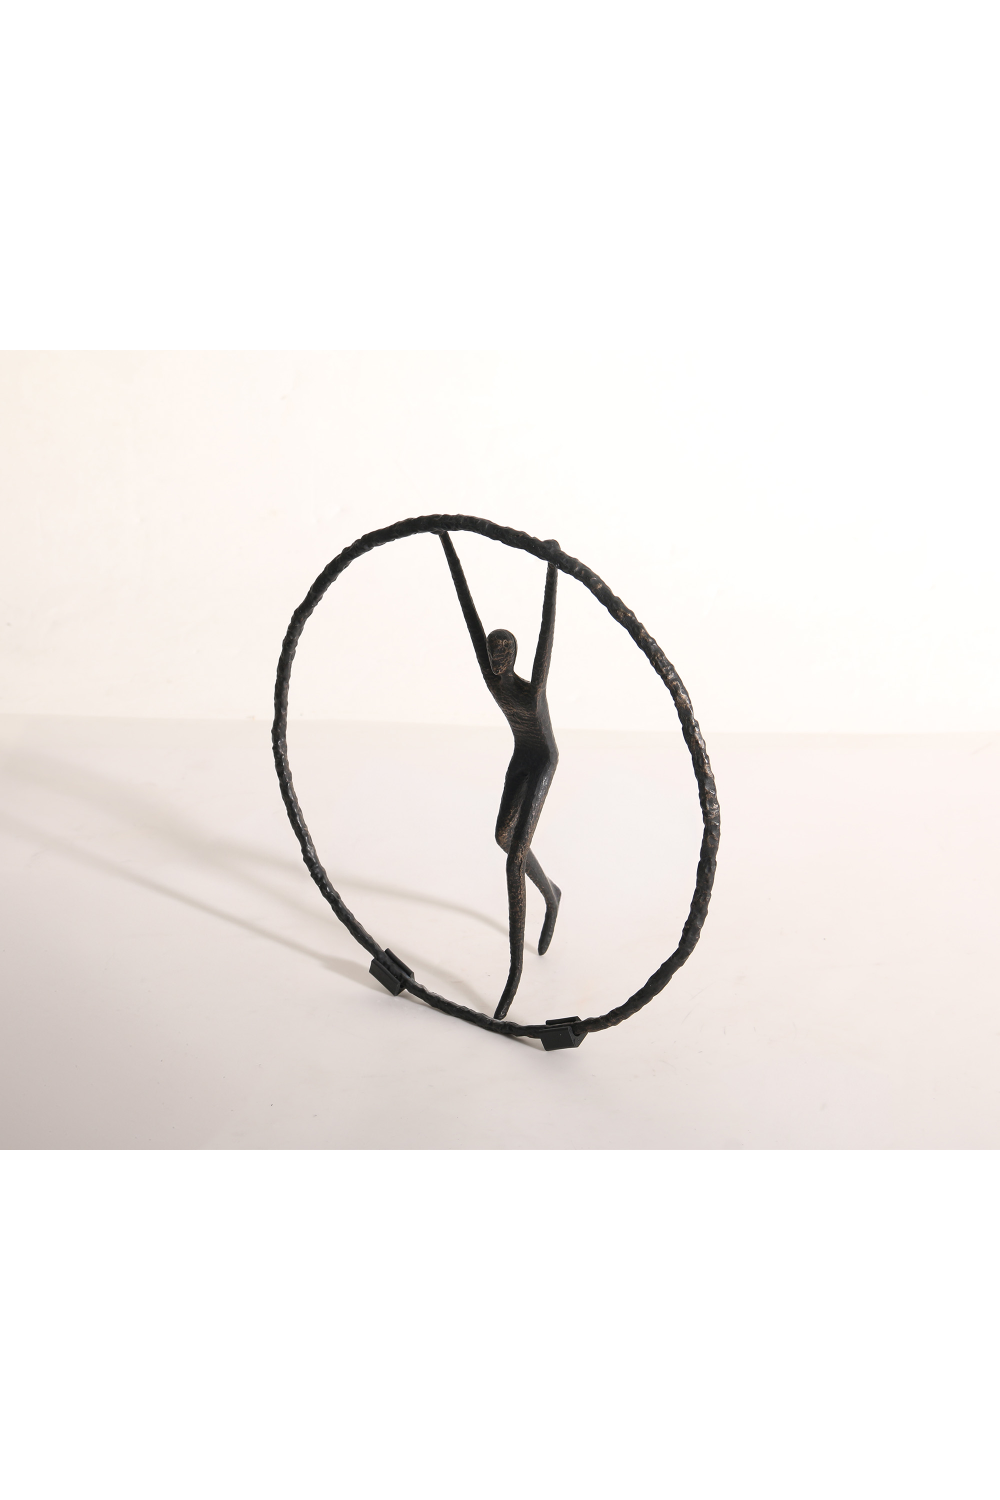 Human Figure Black Sculpture | Liang & Eimil Riley | Oroa.com